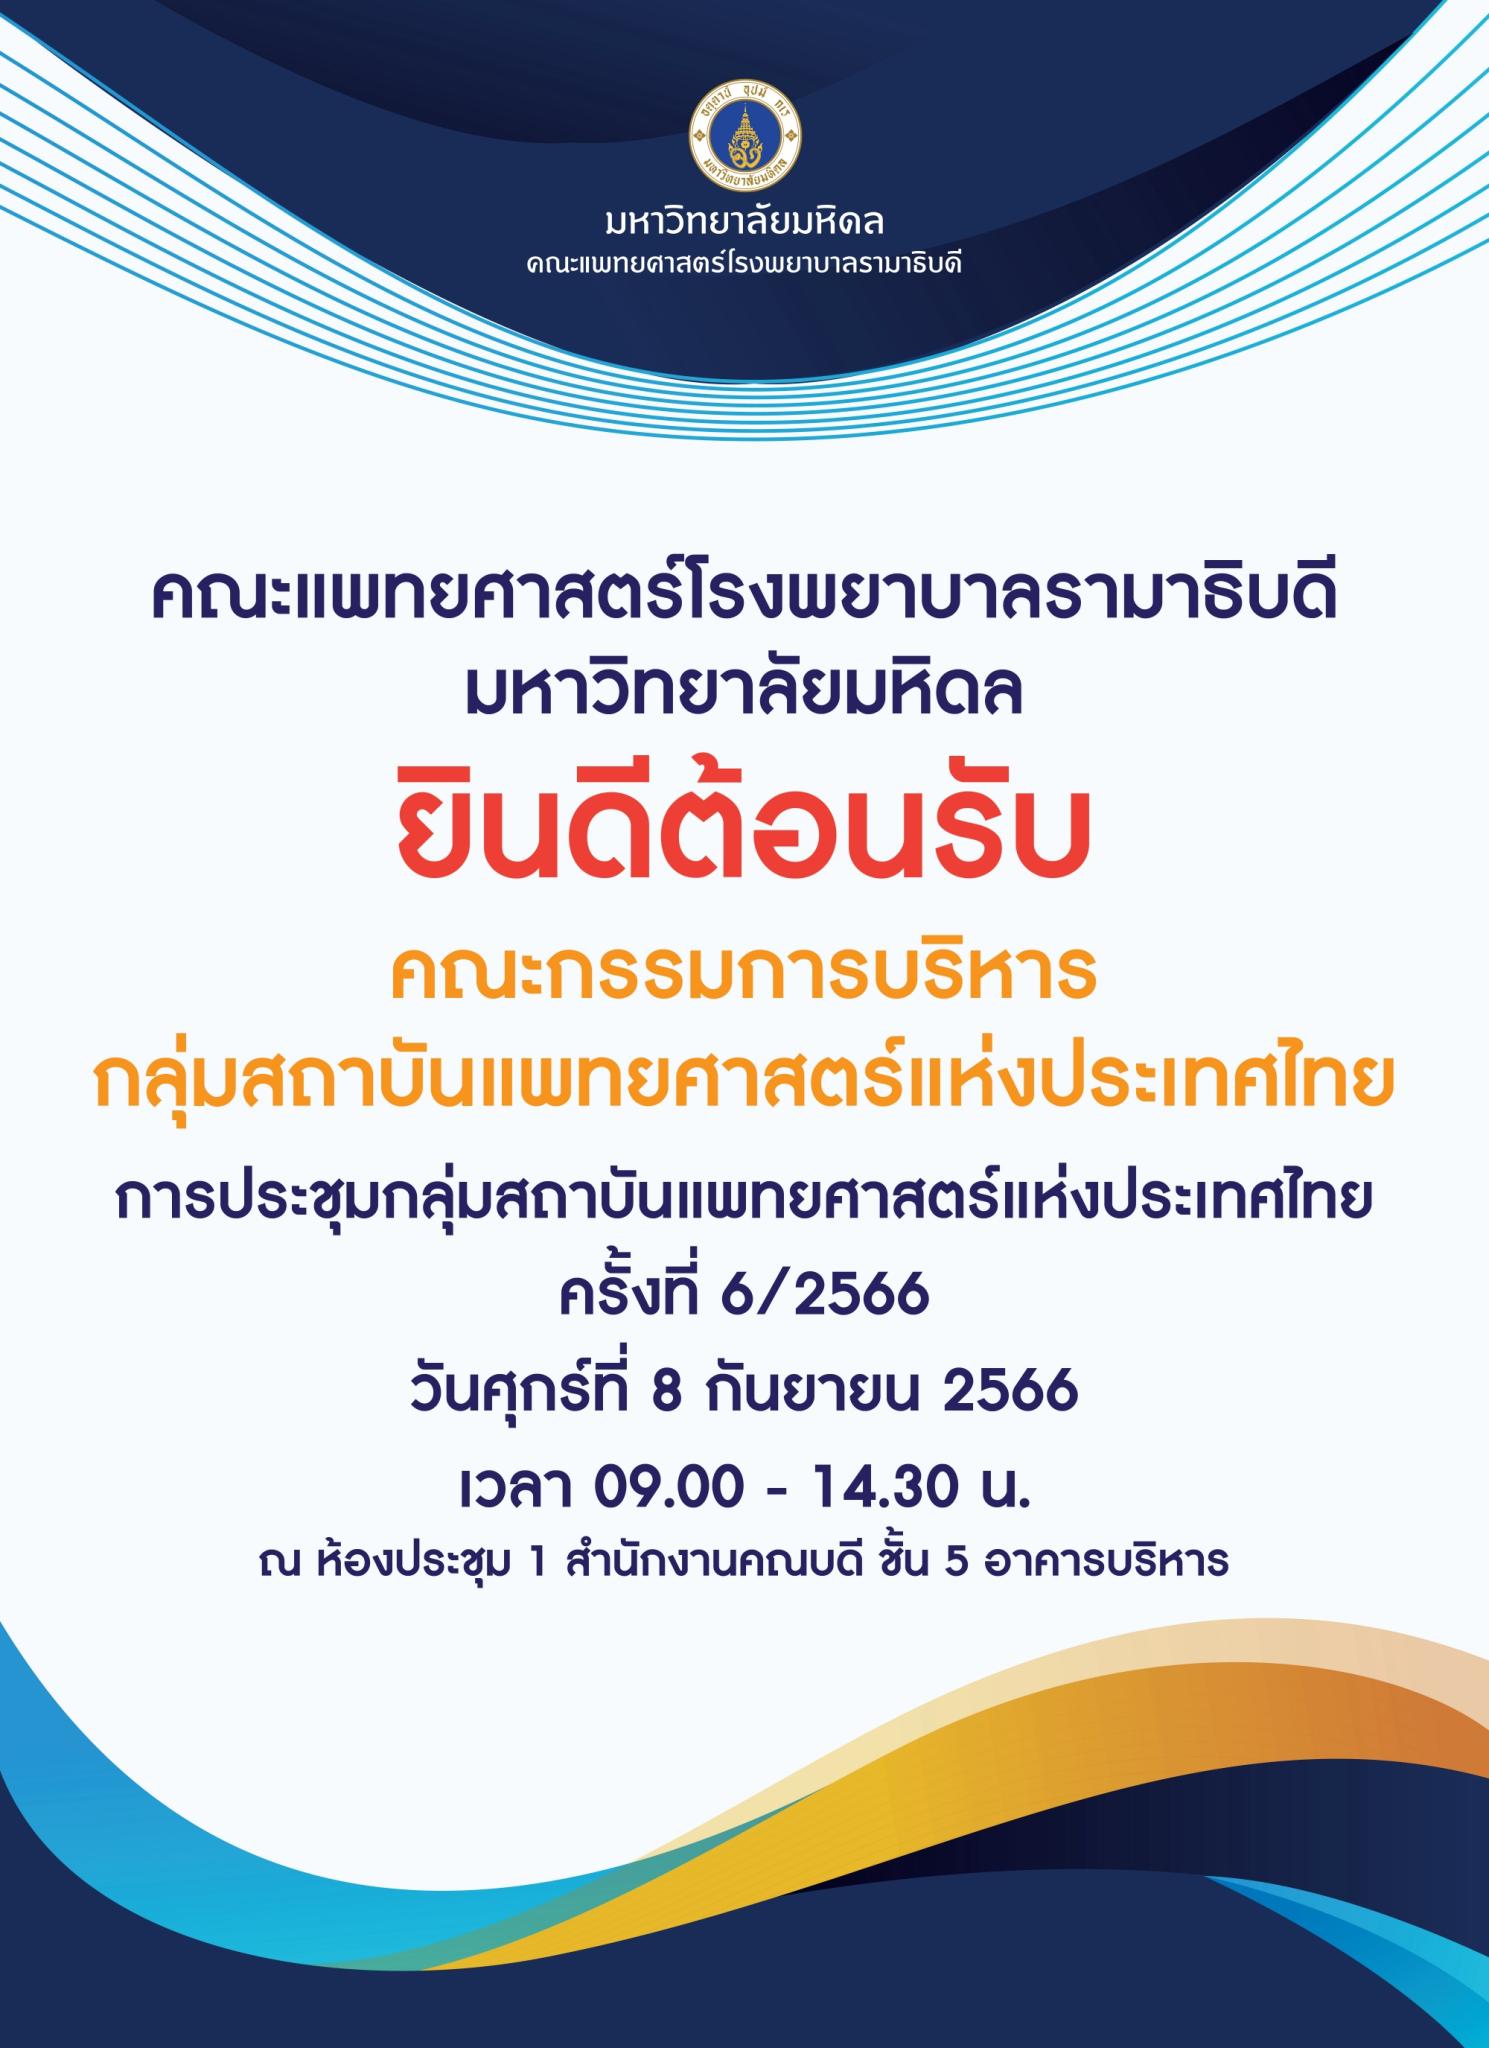 ยินดีต้อนรับ คณะกรรมการบริหารกลุ่มสถาบันแพทยศาสตร์แห่งประเทศไทย การประชุมกลุ่มสถาบันแพทยศาสตร์แห่งประเทศไทย ครั้งที่ 6/2566